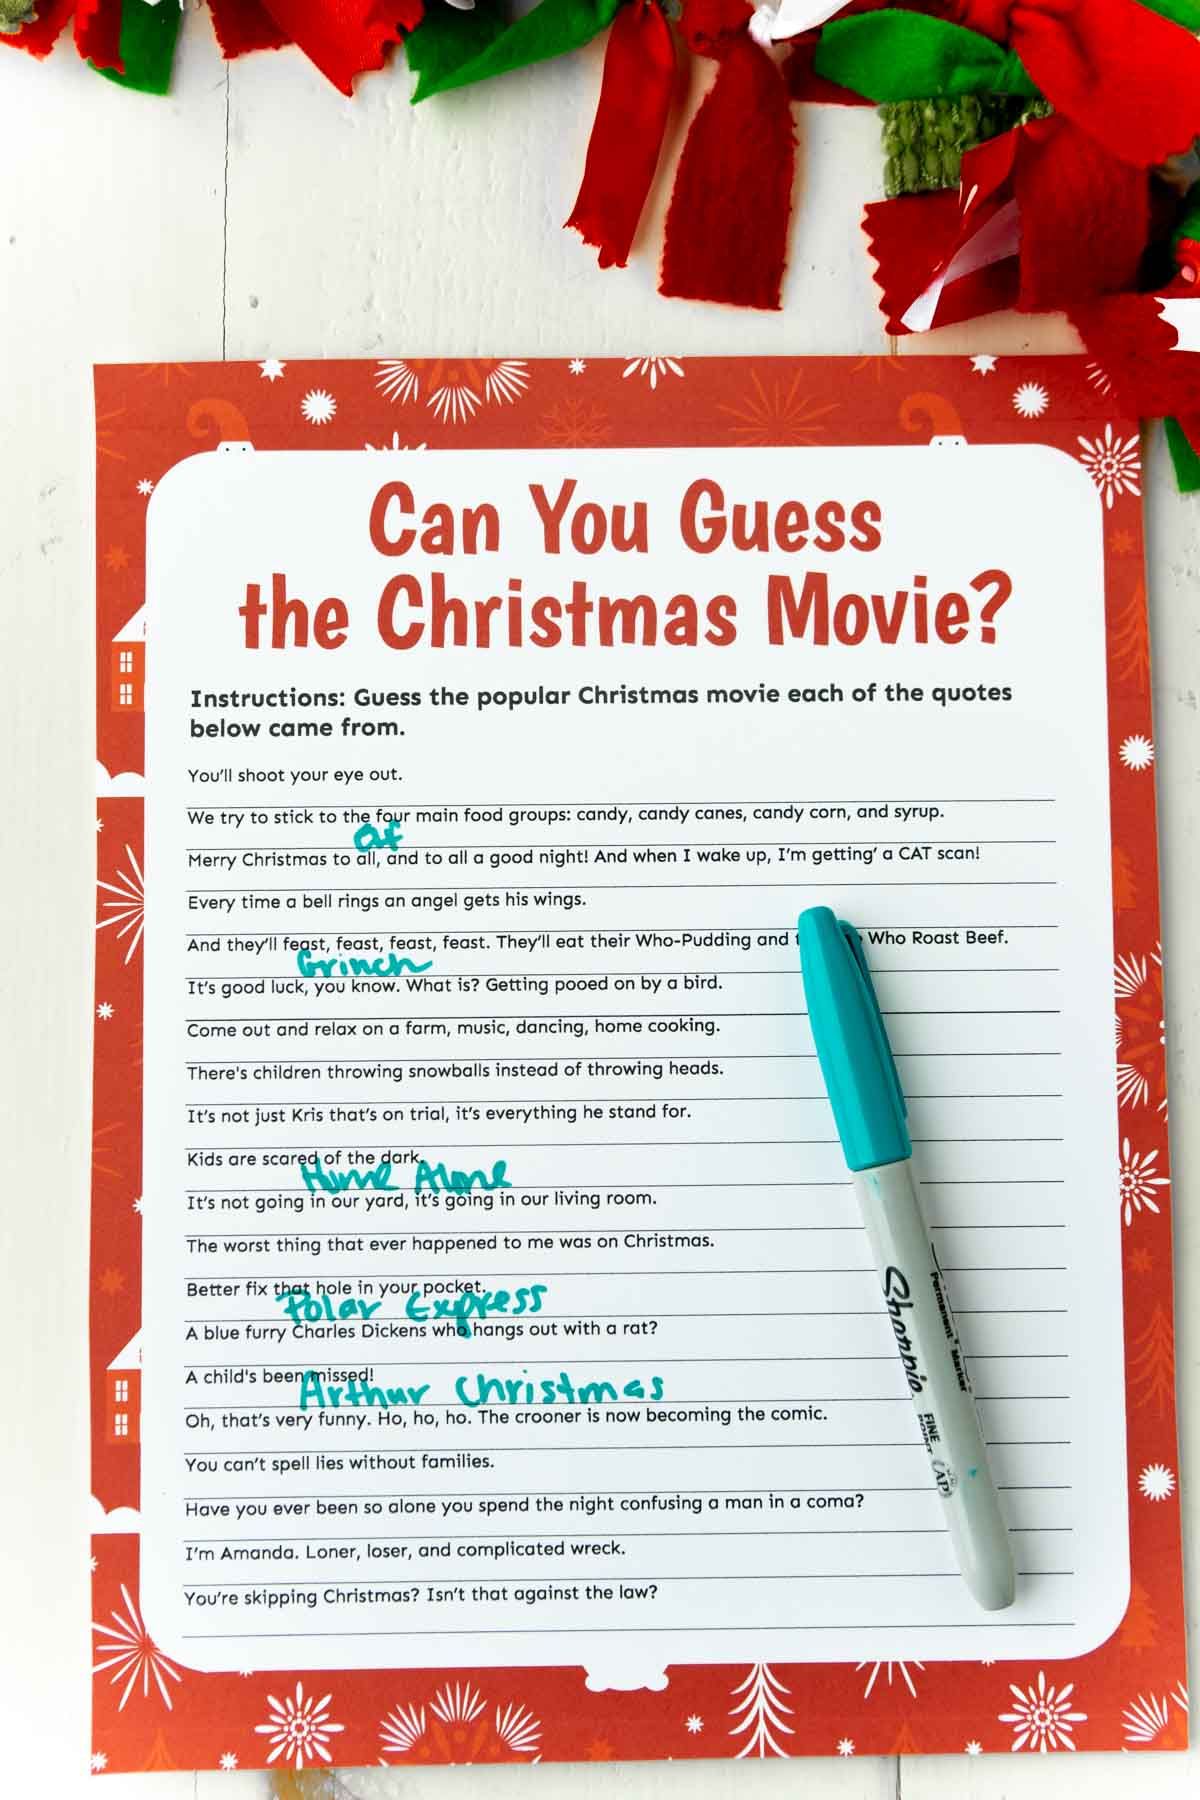 Un joc de curiositats de pel·lícules de Nadal amb un bolígraf verd a la part superior